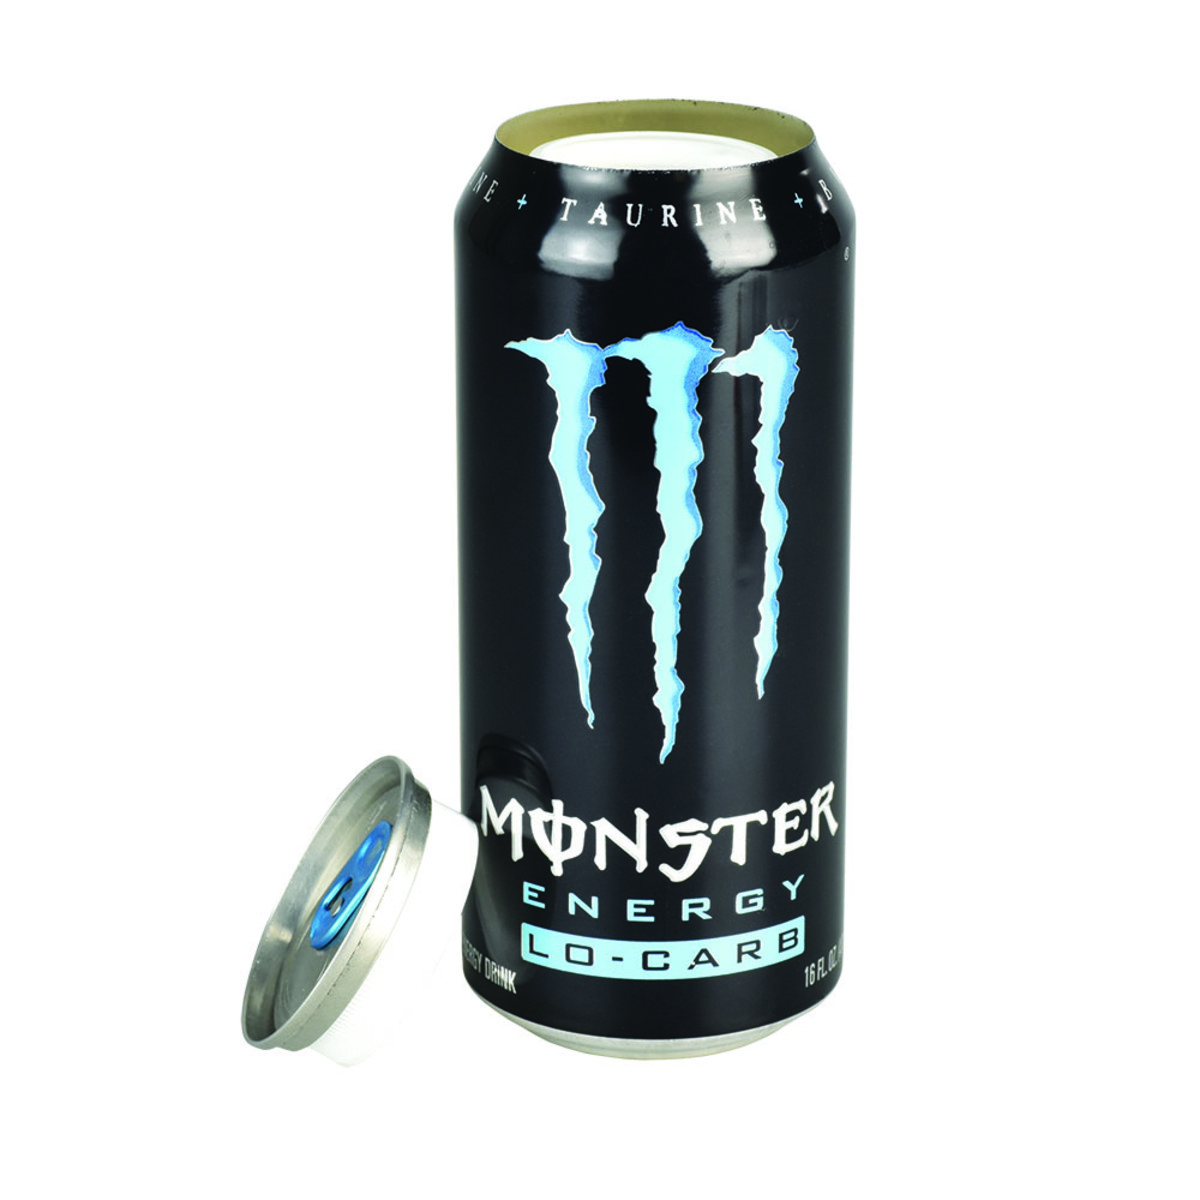 Monster Energy Drink Diversion Stash Safe